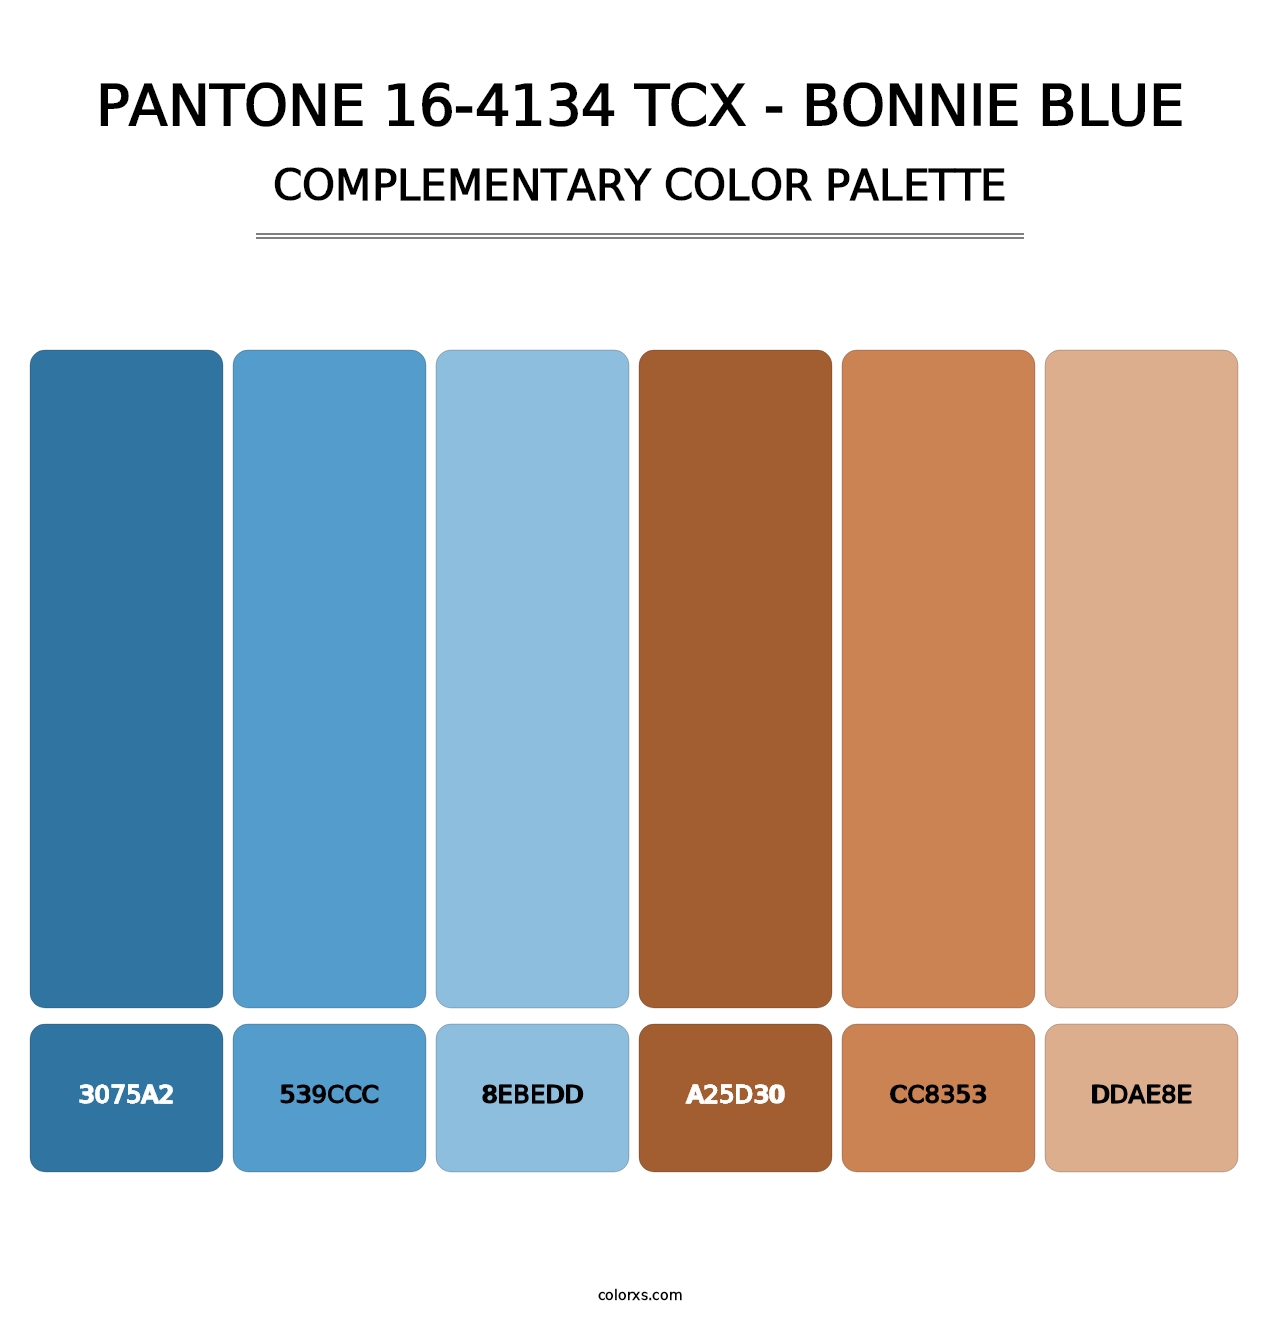 PANTONE 16-4134 TCX - Bonnie Blue - Complementary Color Palette